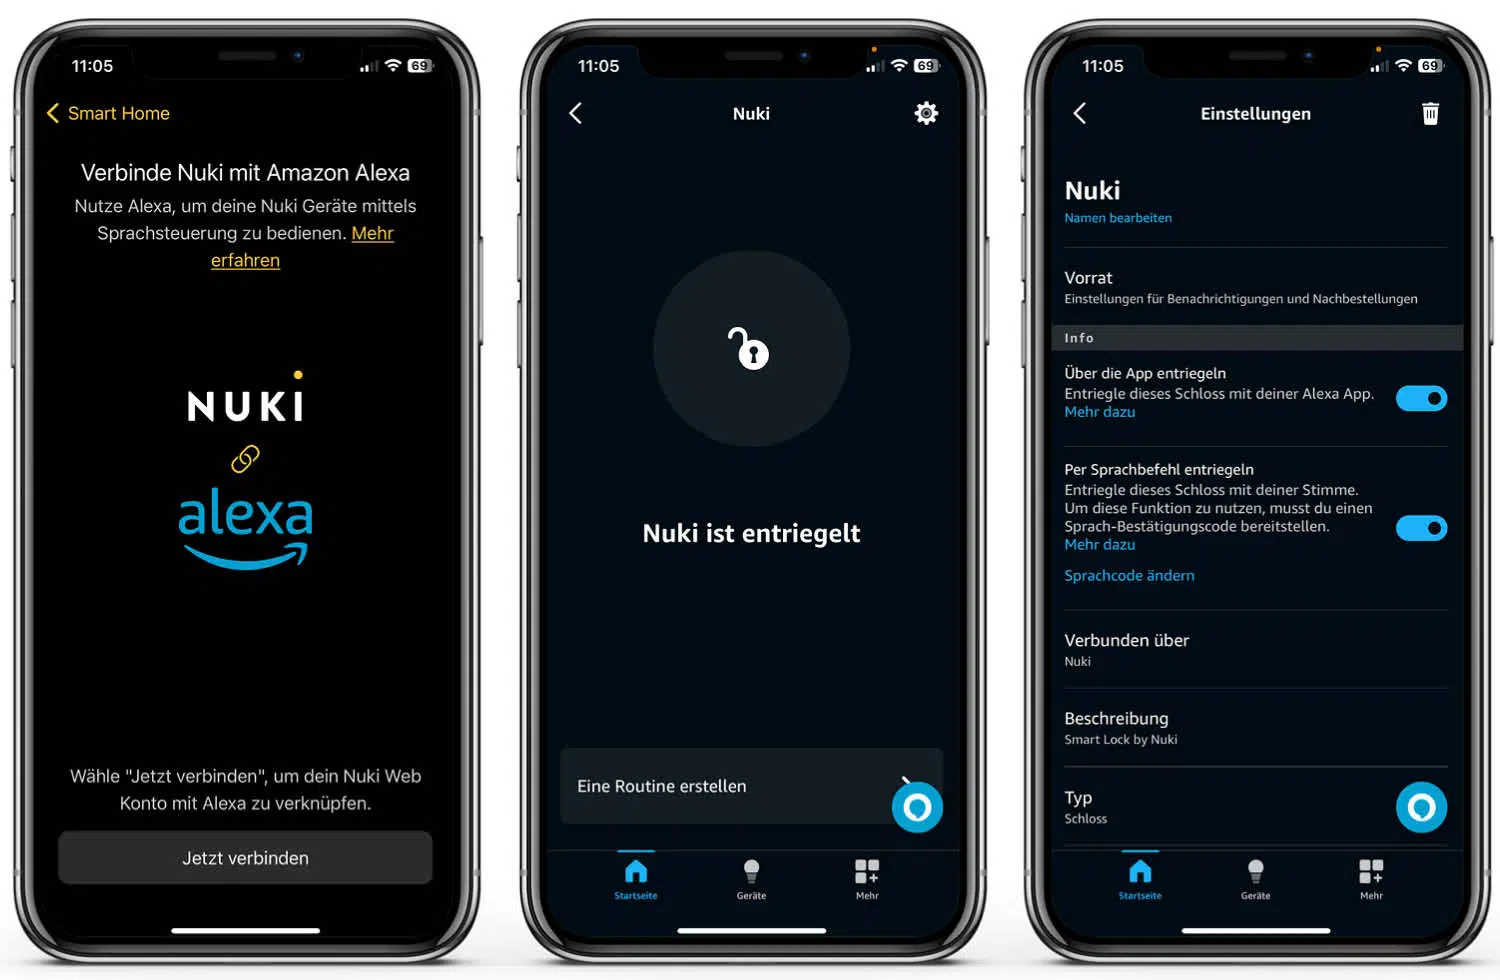 Nuki Smart Lock 4.0 Pro - App - Die Steuerung über die Alexa-App